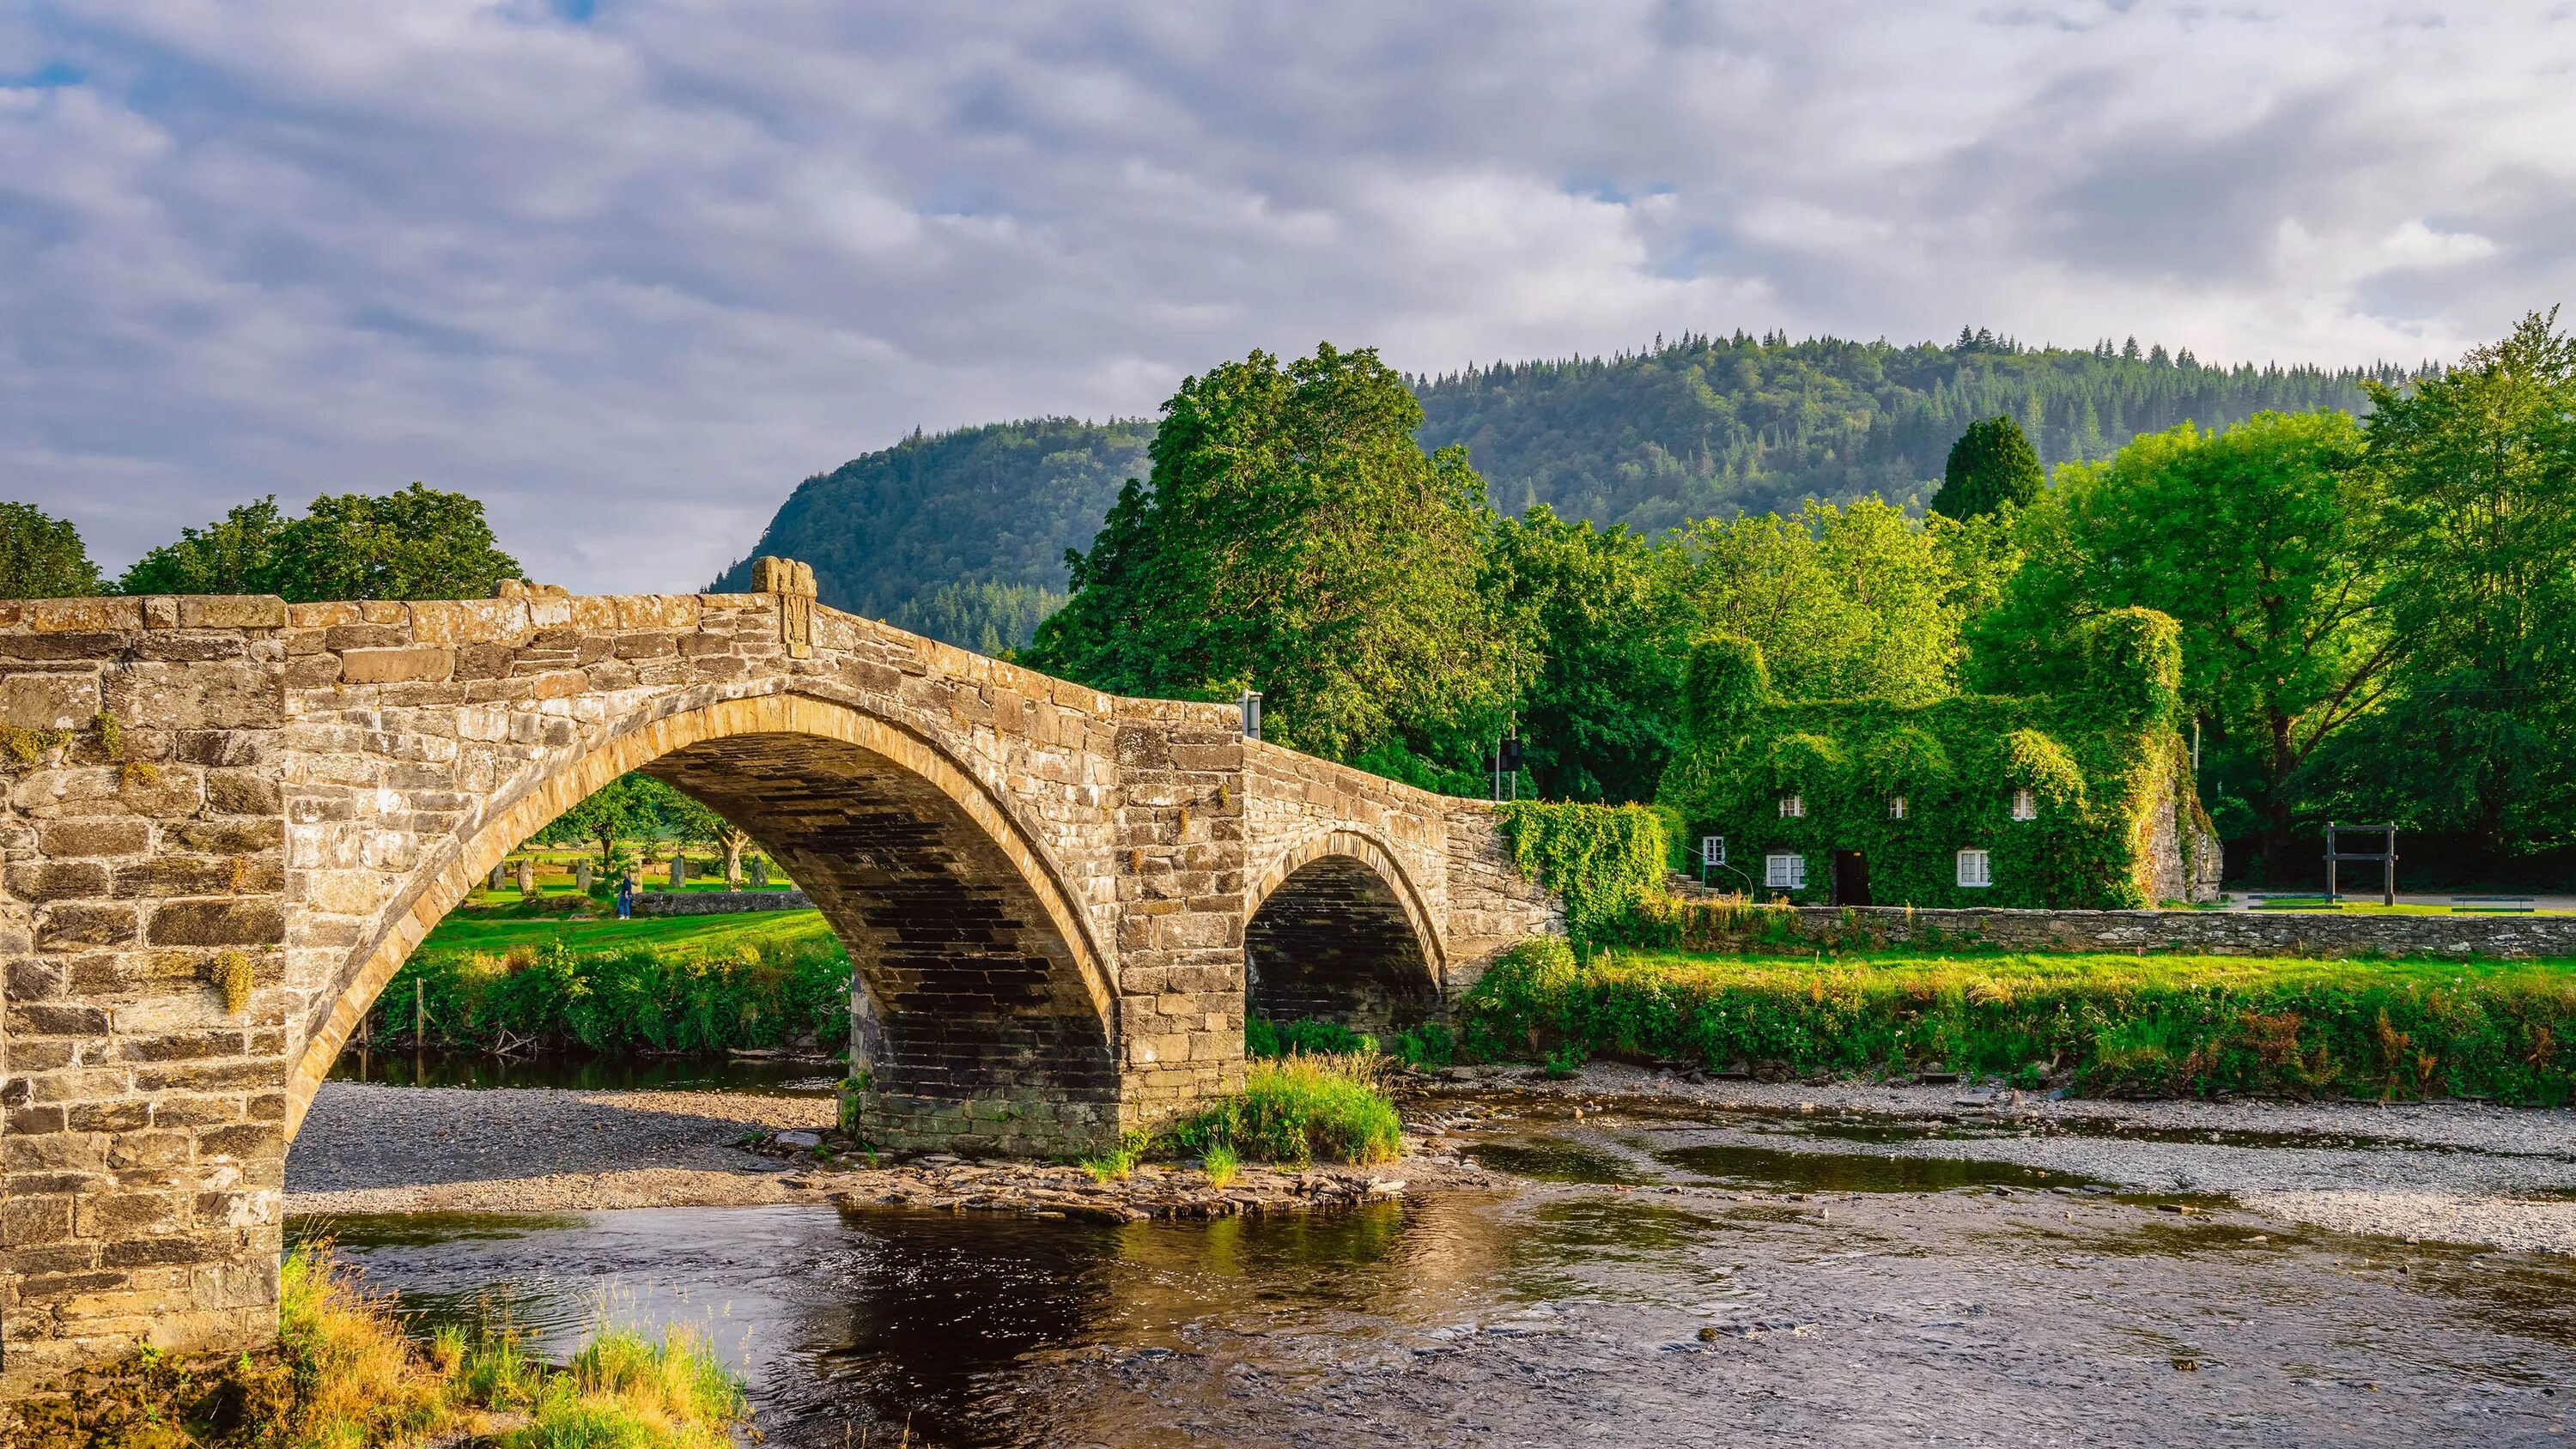 Www bing com image. Каменный мост Уэльс Англия. Мост Солкан Словения. Река Северн Уэльс. Мост Понте-де-Дон-Луиш.